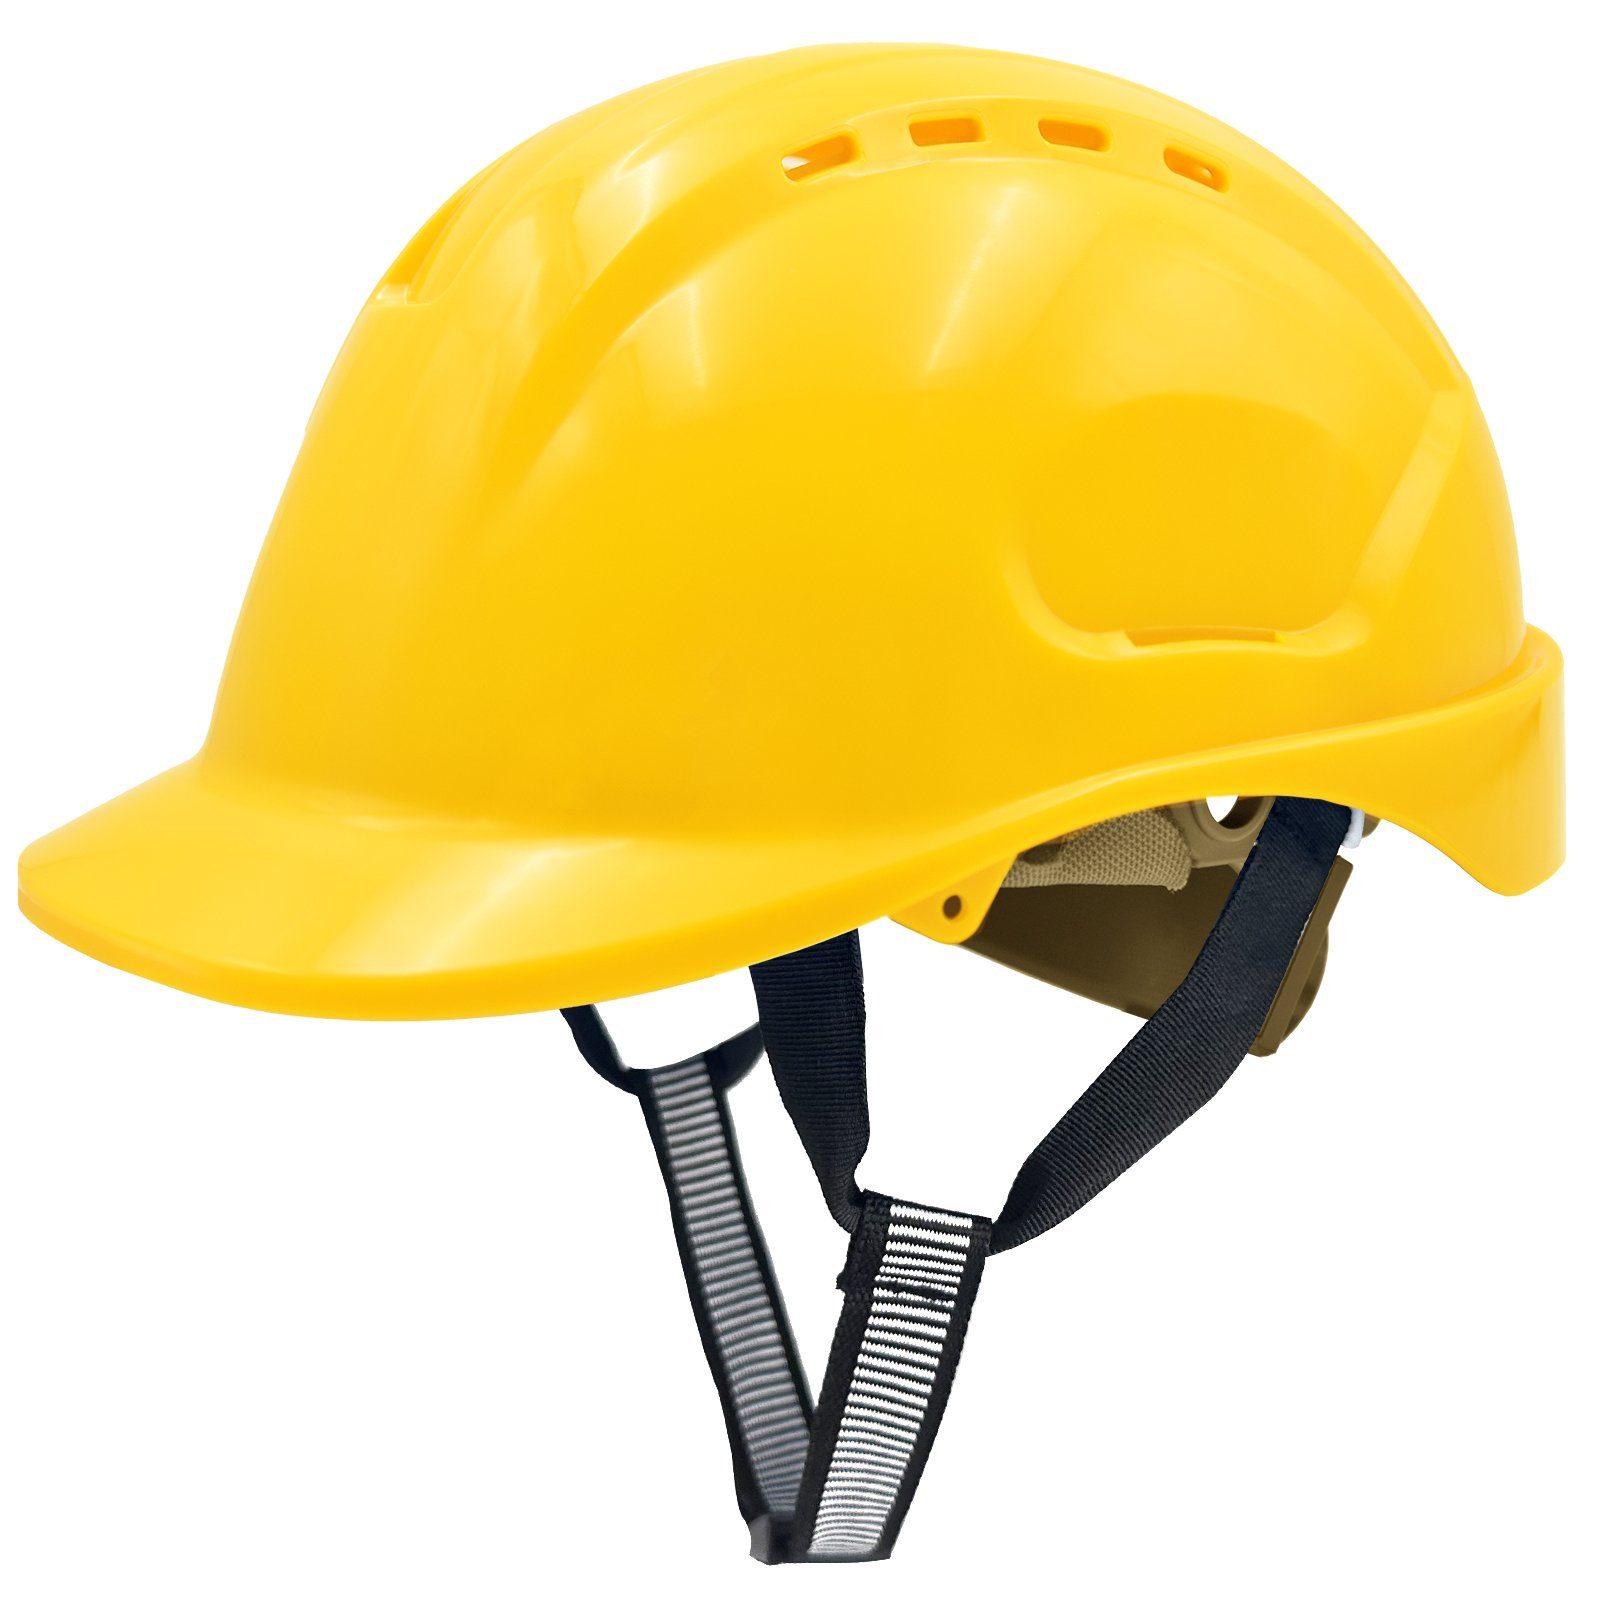 Mustbau Schutzhelm, ABS Bauhelm Arbeitshelm Bauarbeiterhelm,52-66cm Einstellbar